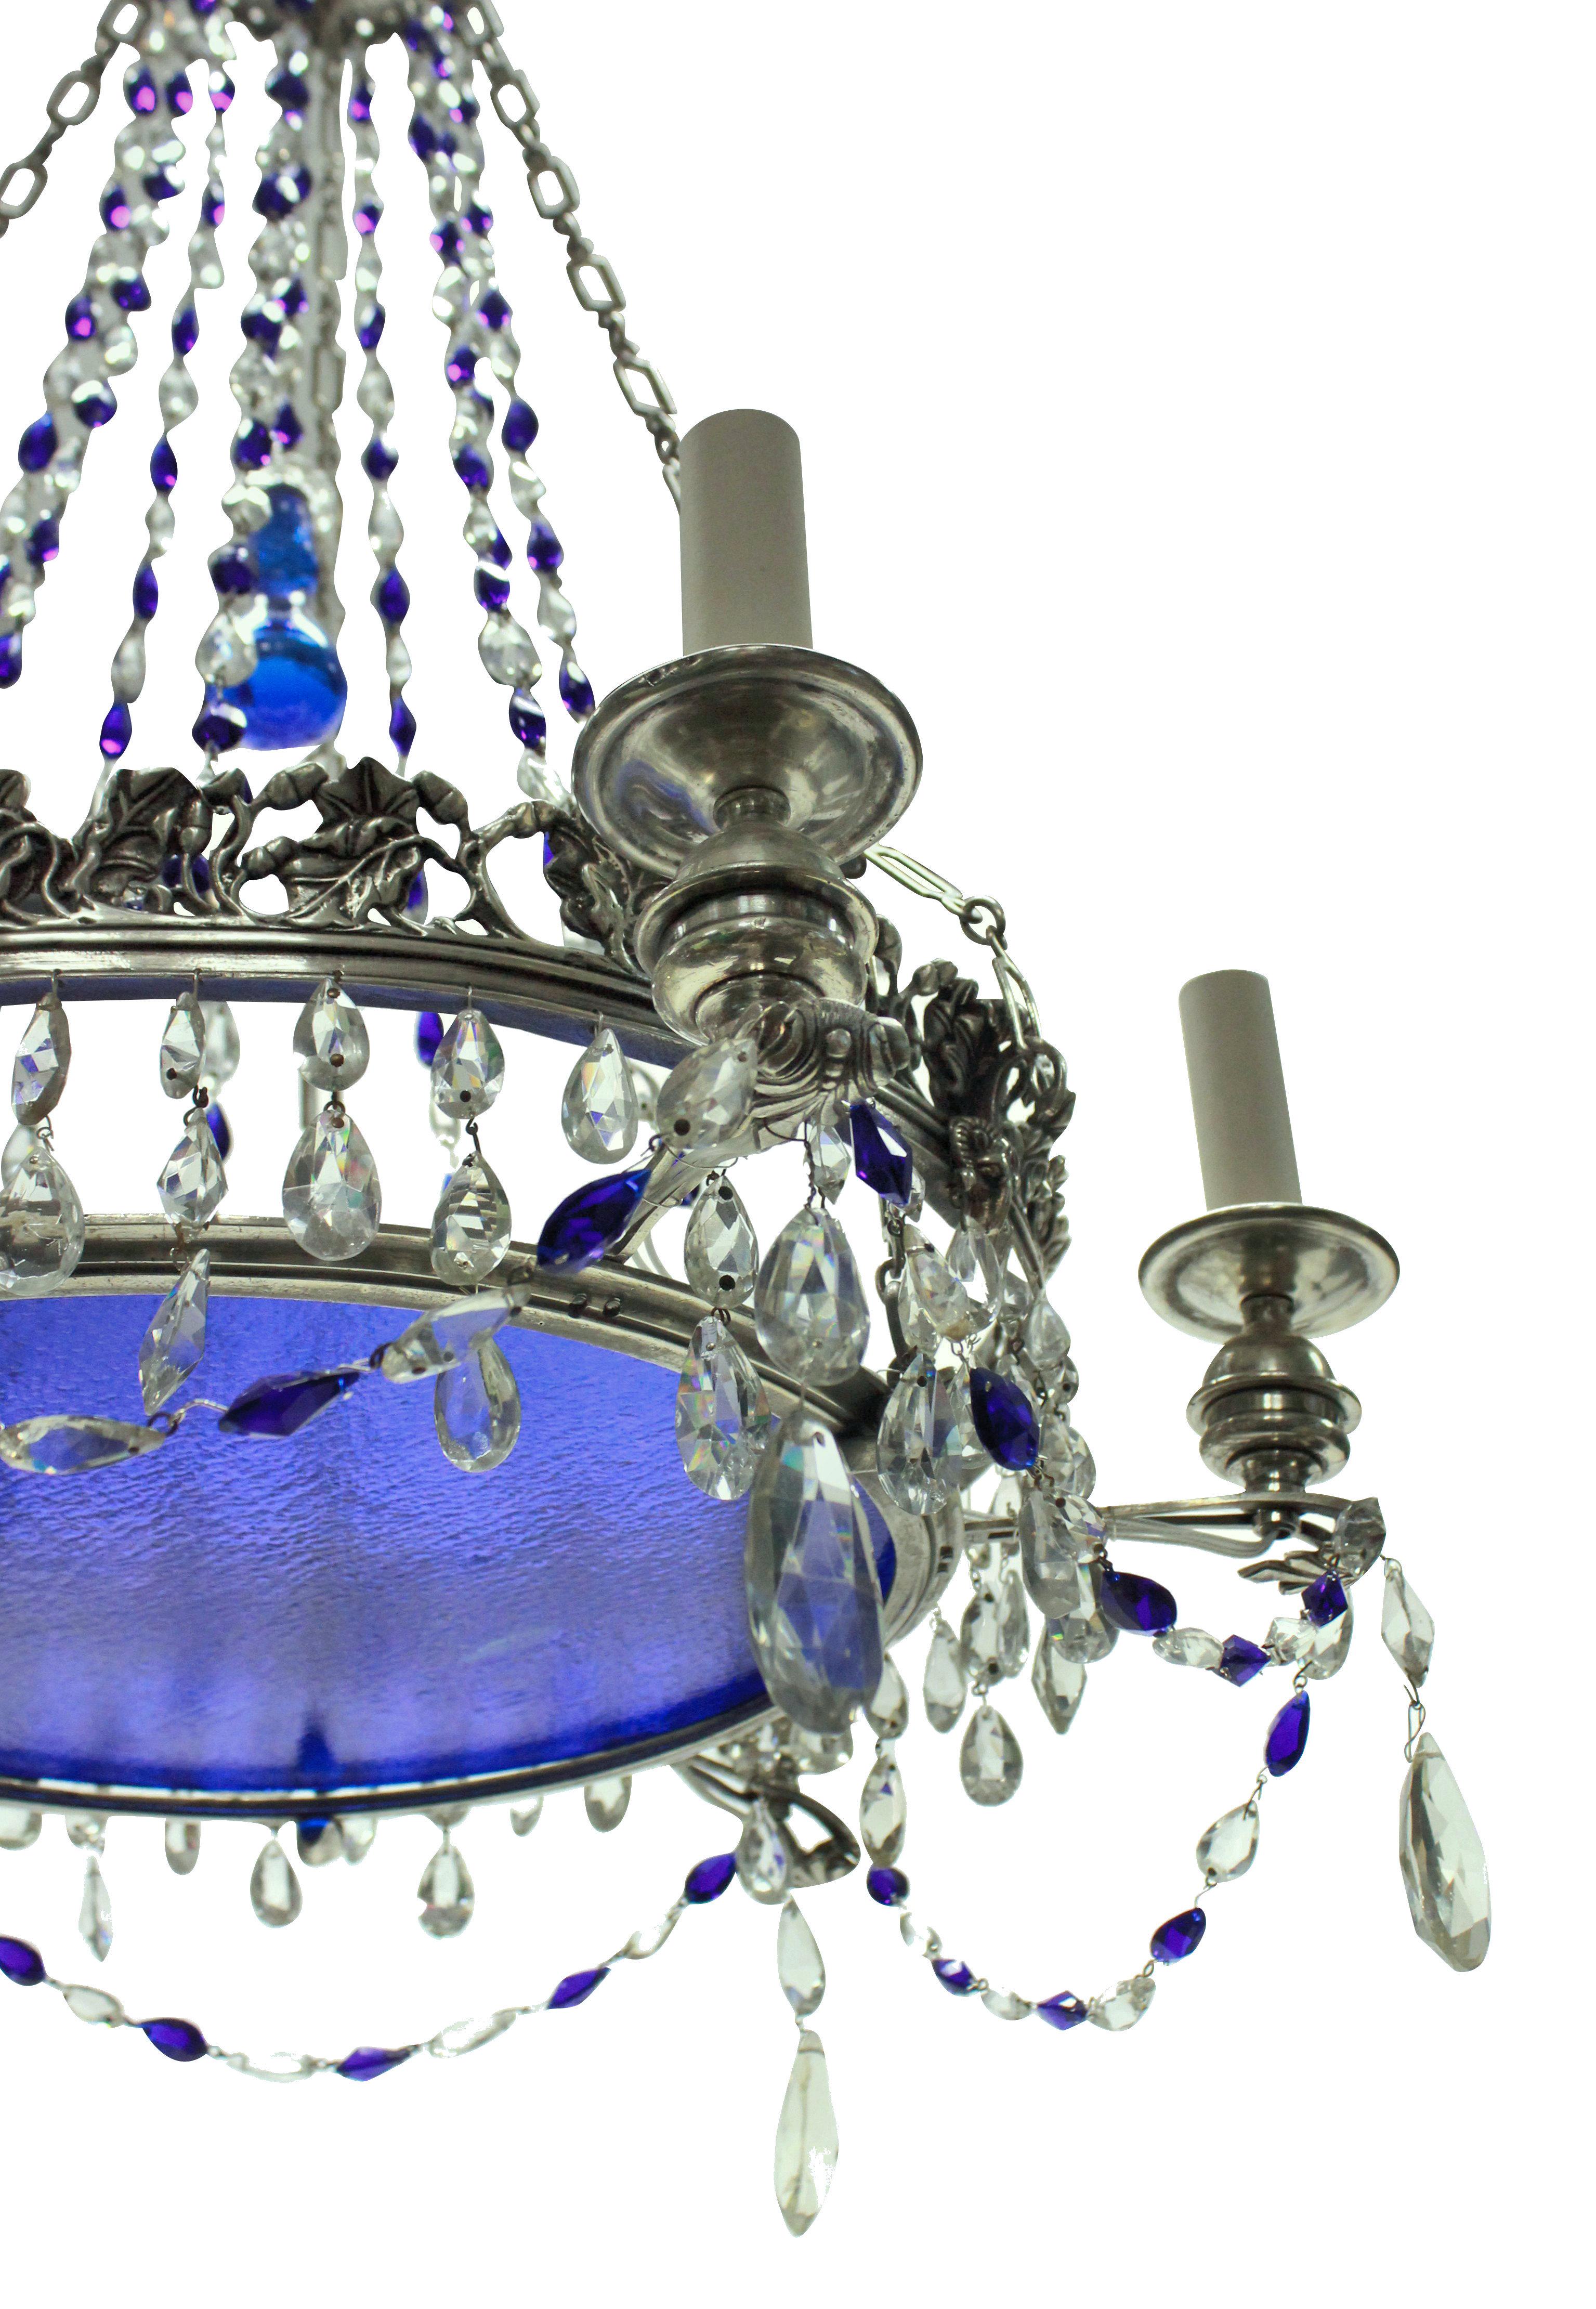 Ein charmanter russischer Kronleuchter aus dem 19. Jahrhundert, versilbert, mit geschliffenen Glastropfen guter Qualität, blauen Glasdetails und einer Platte, aufgehängt an einer Silberkette.